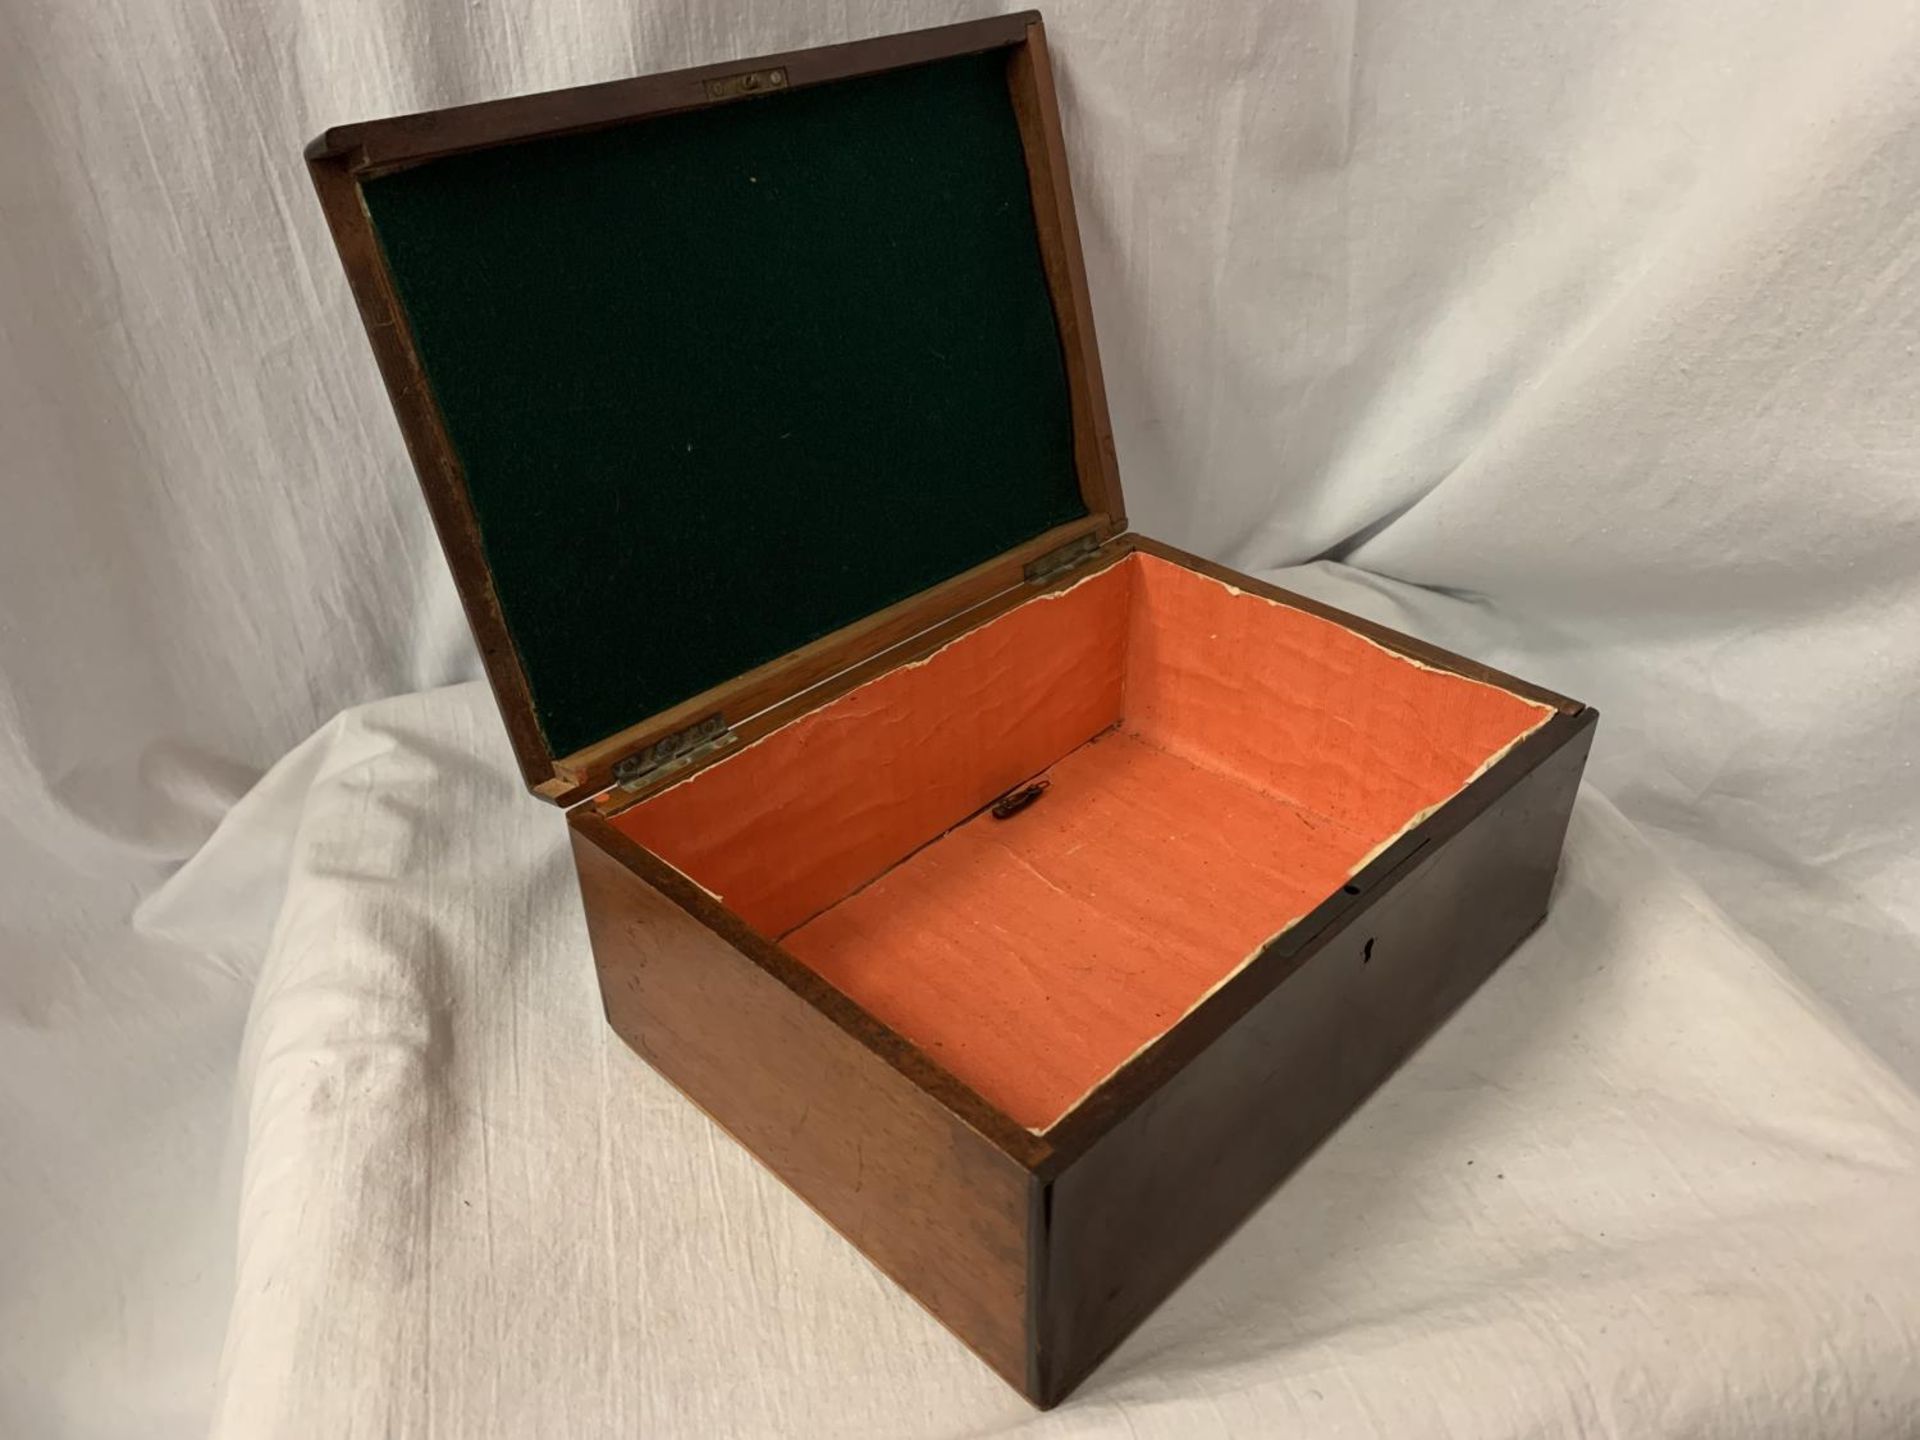 A MAHOGANY HINGED BOX - Image 3 of 3